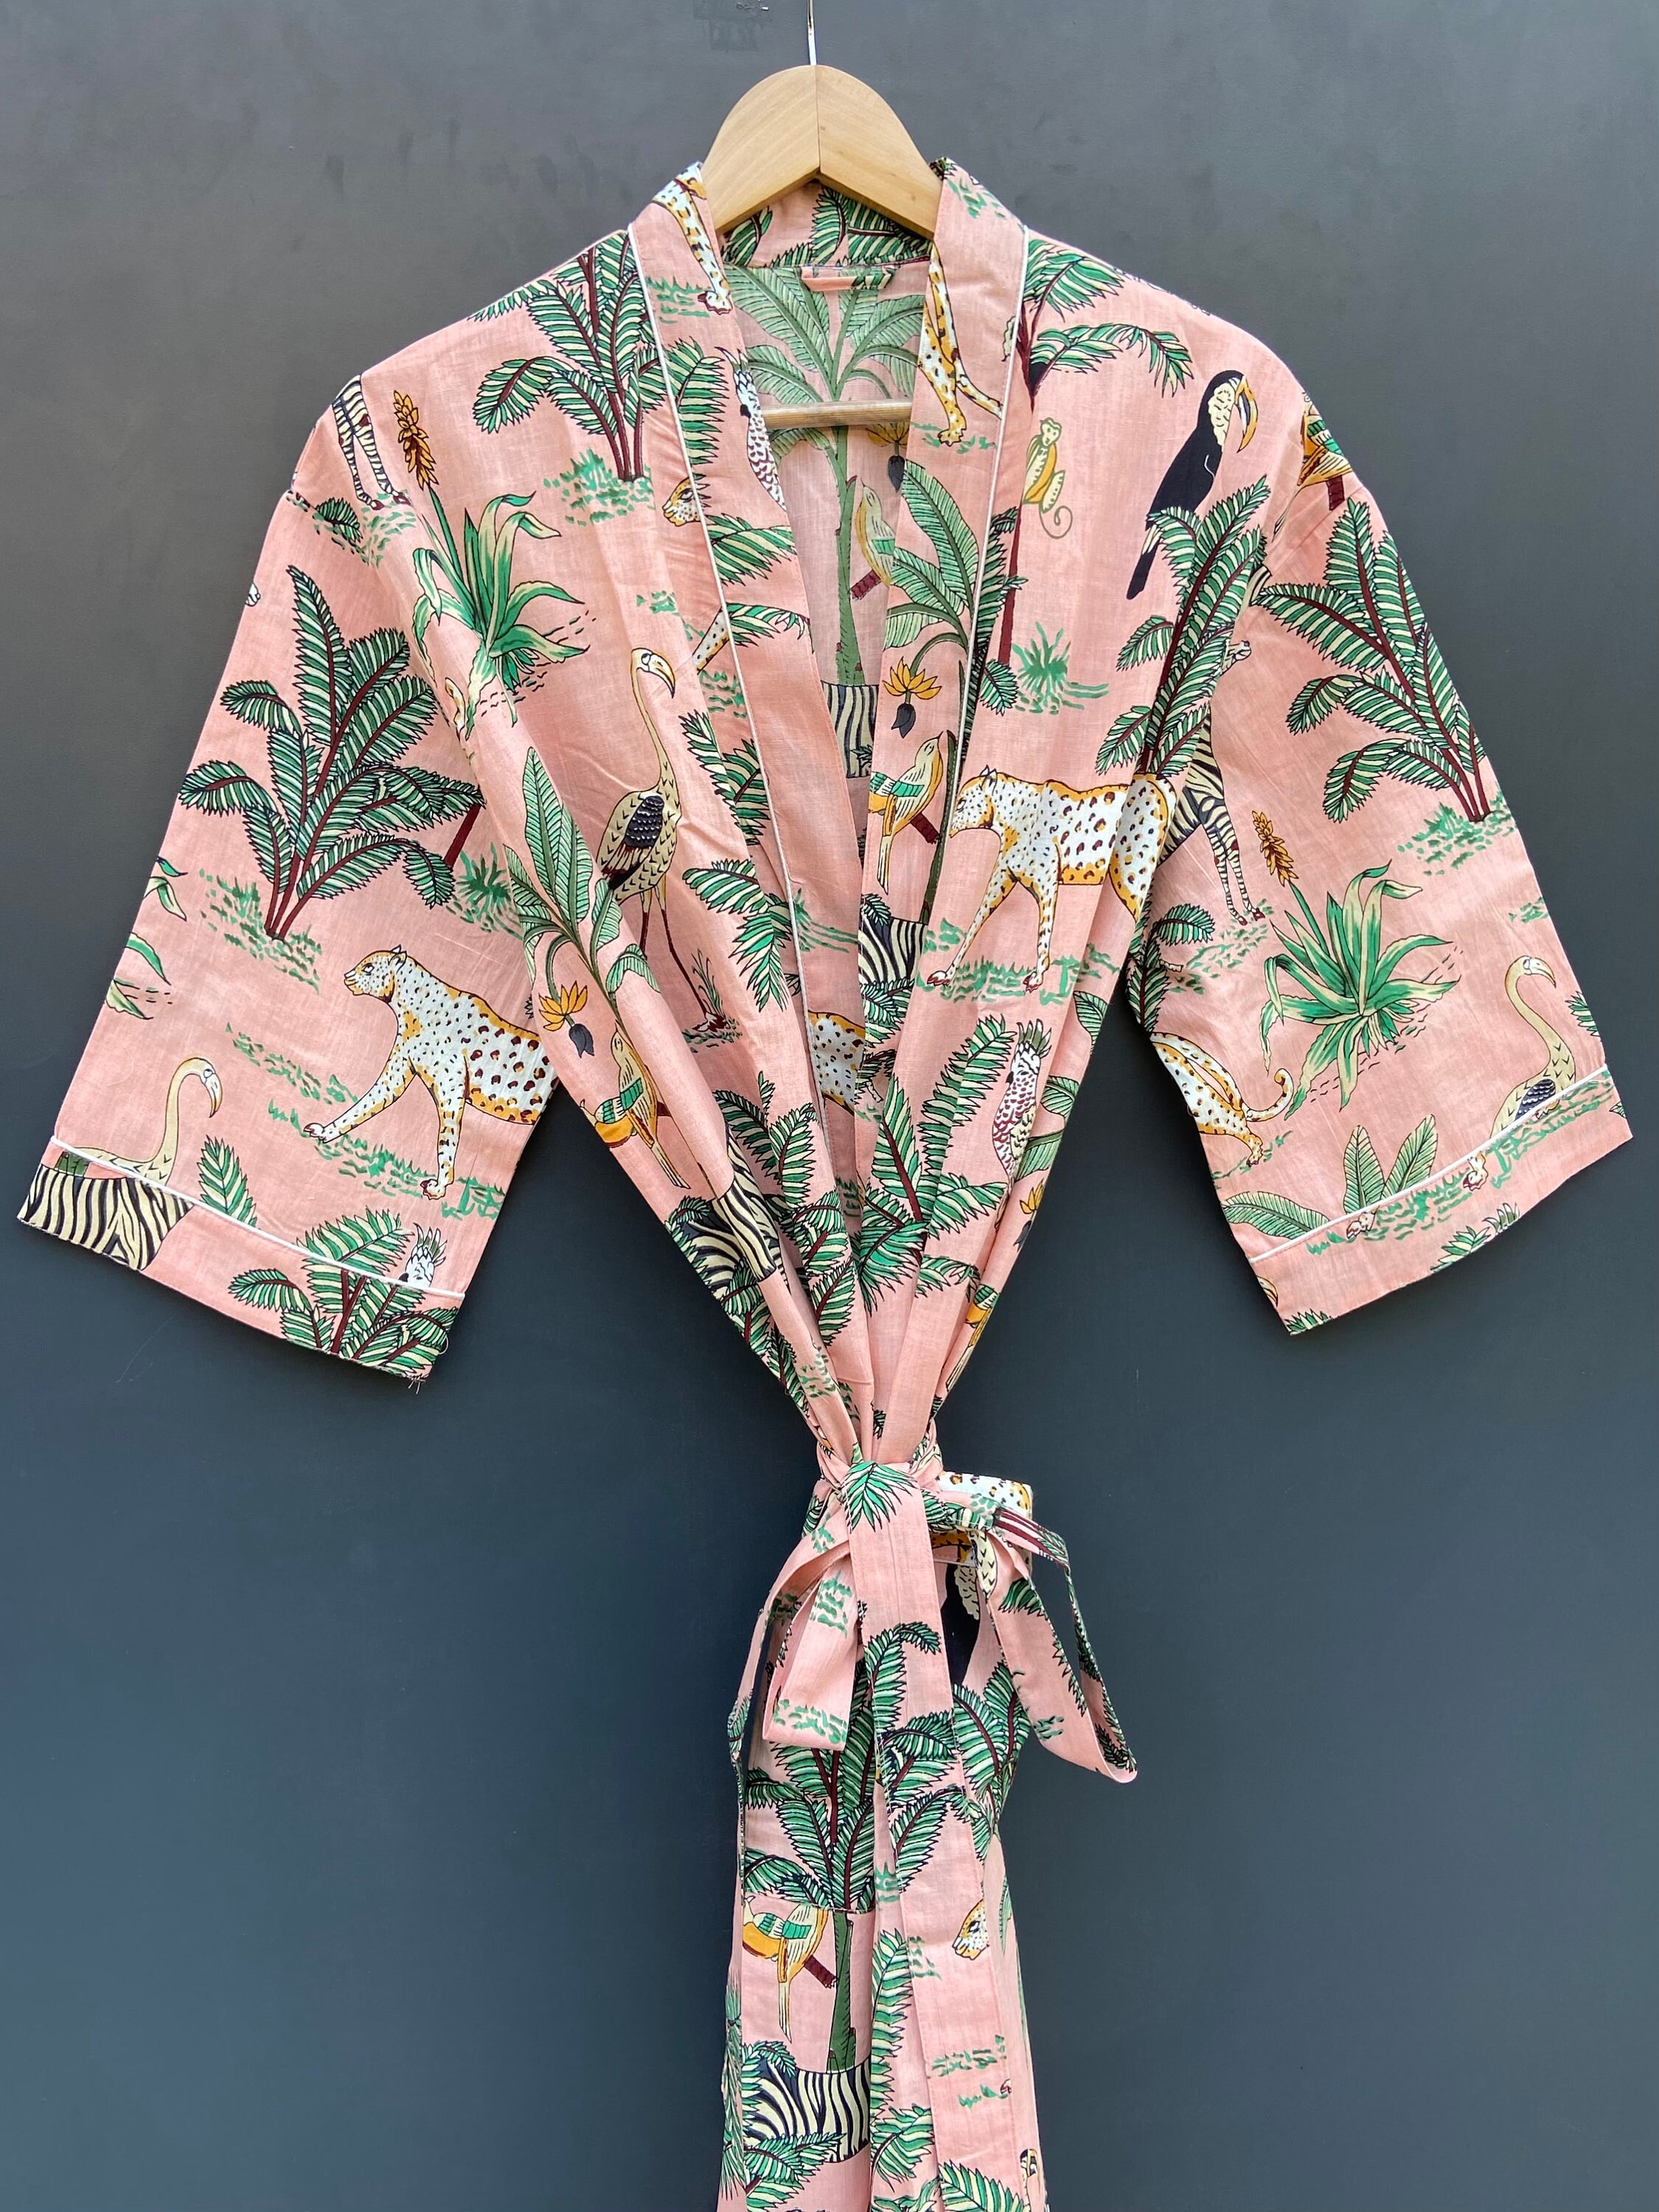 EXPRESS DELIVERY Safari Print Cotton Kimono Robes Wild Life - Etsy